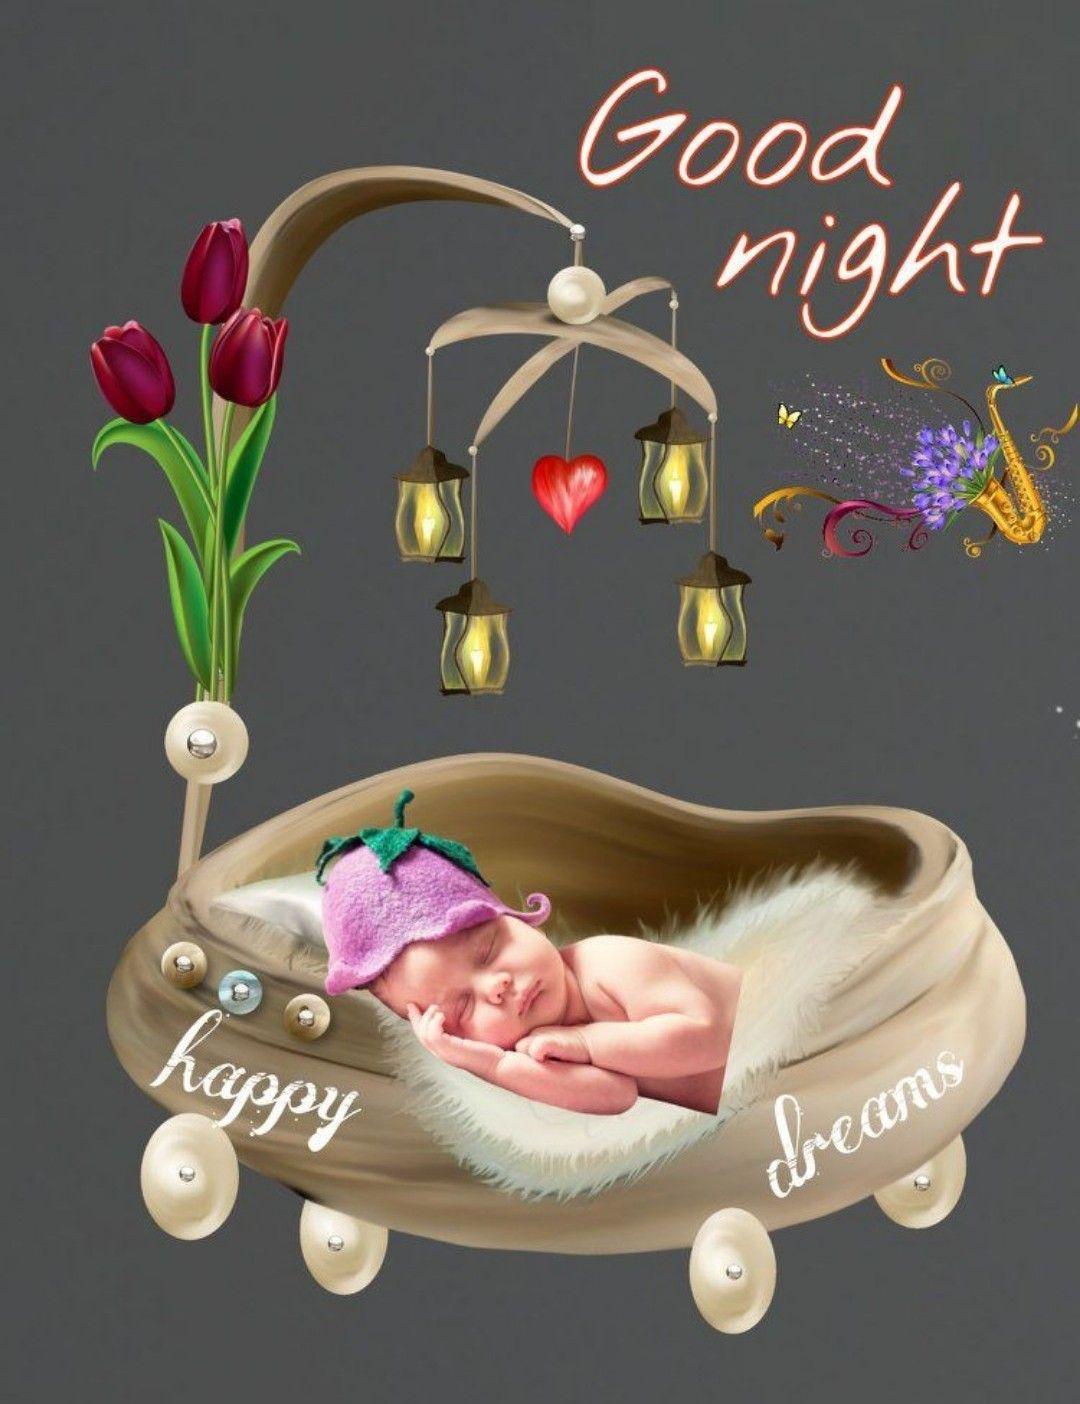 Good Night добрая открытка